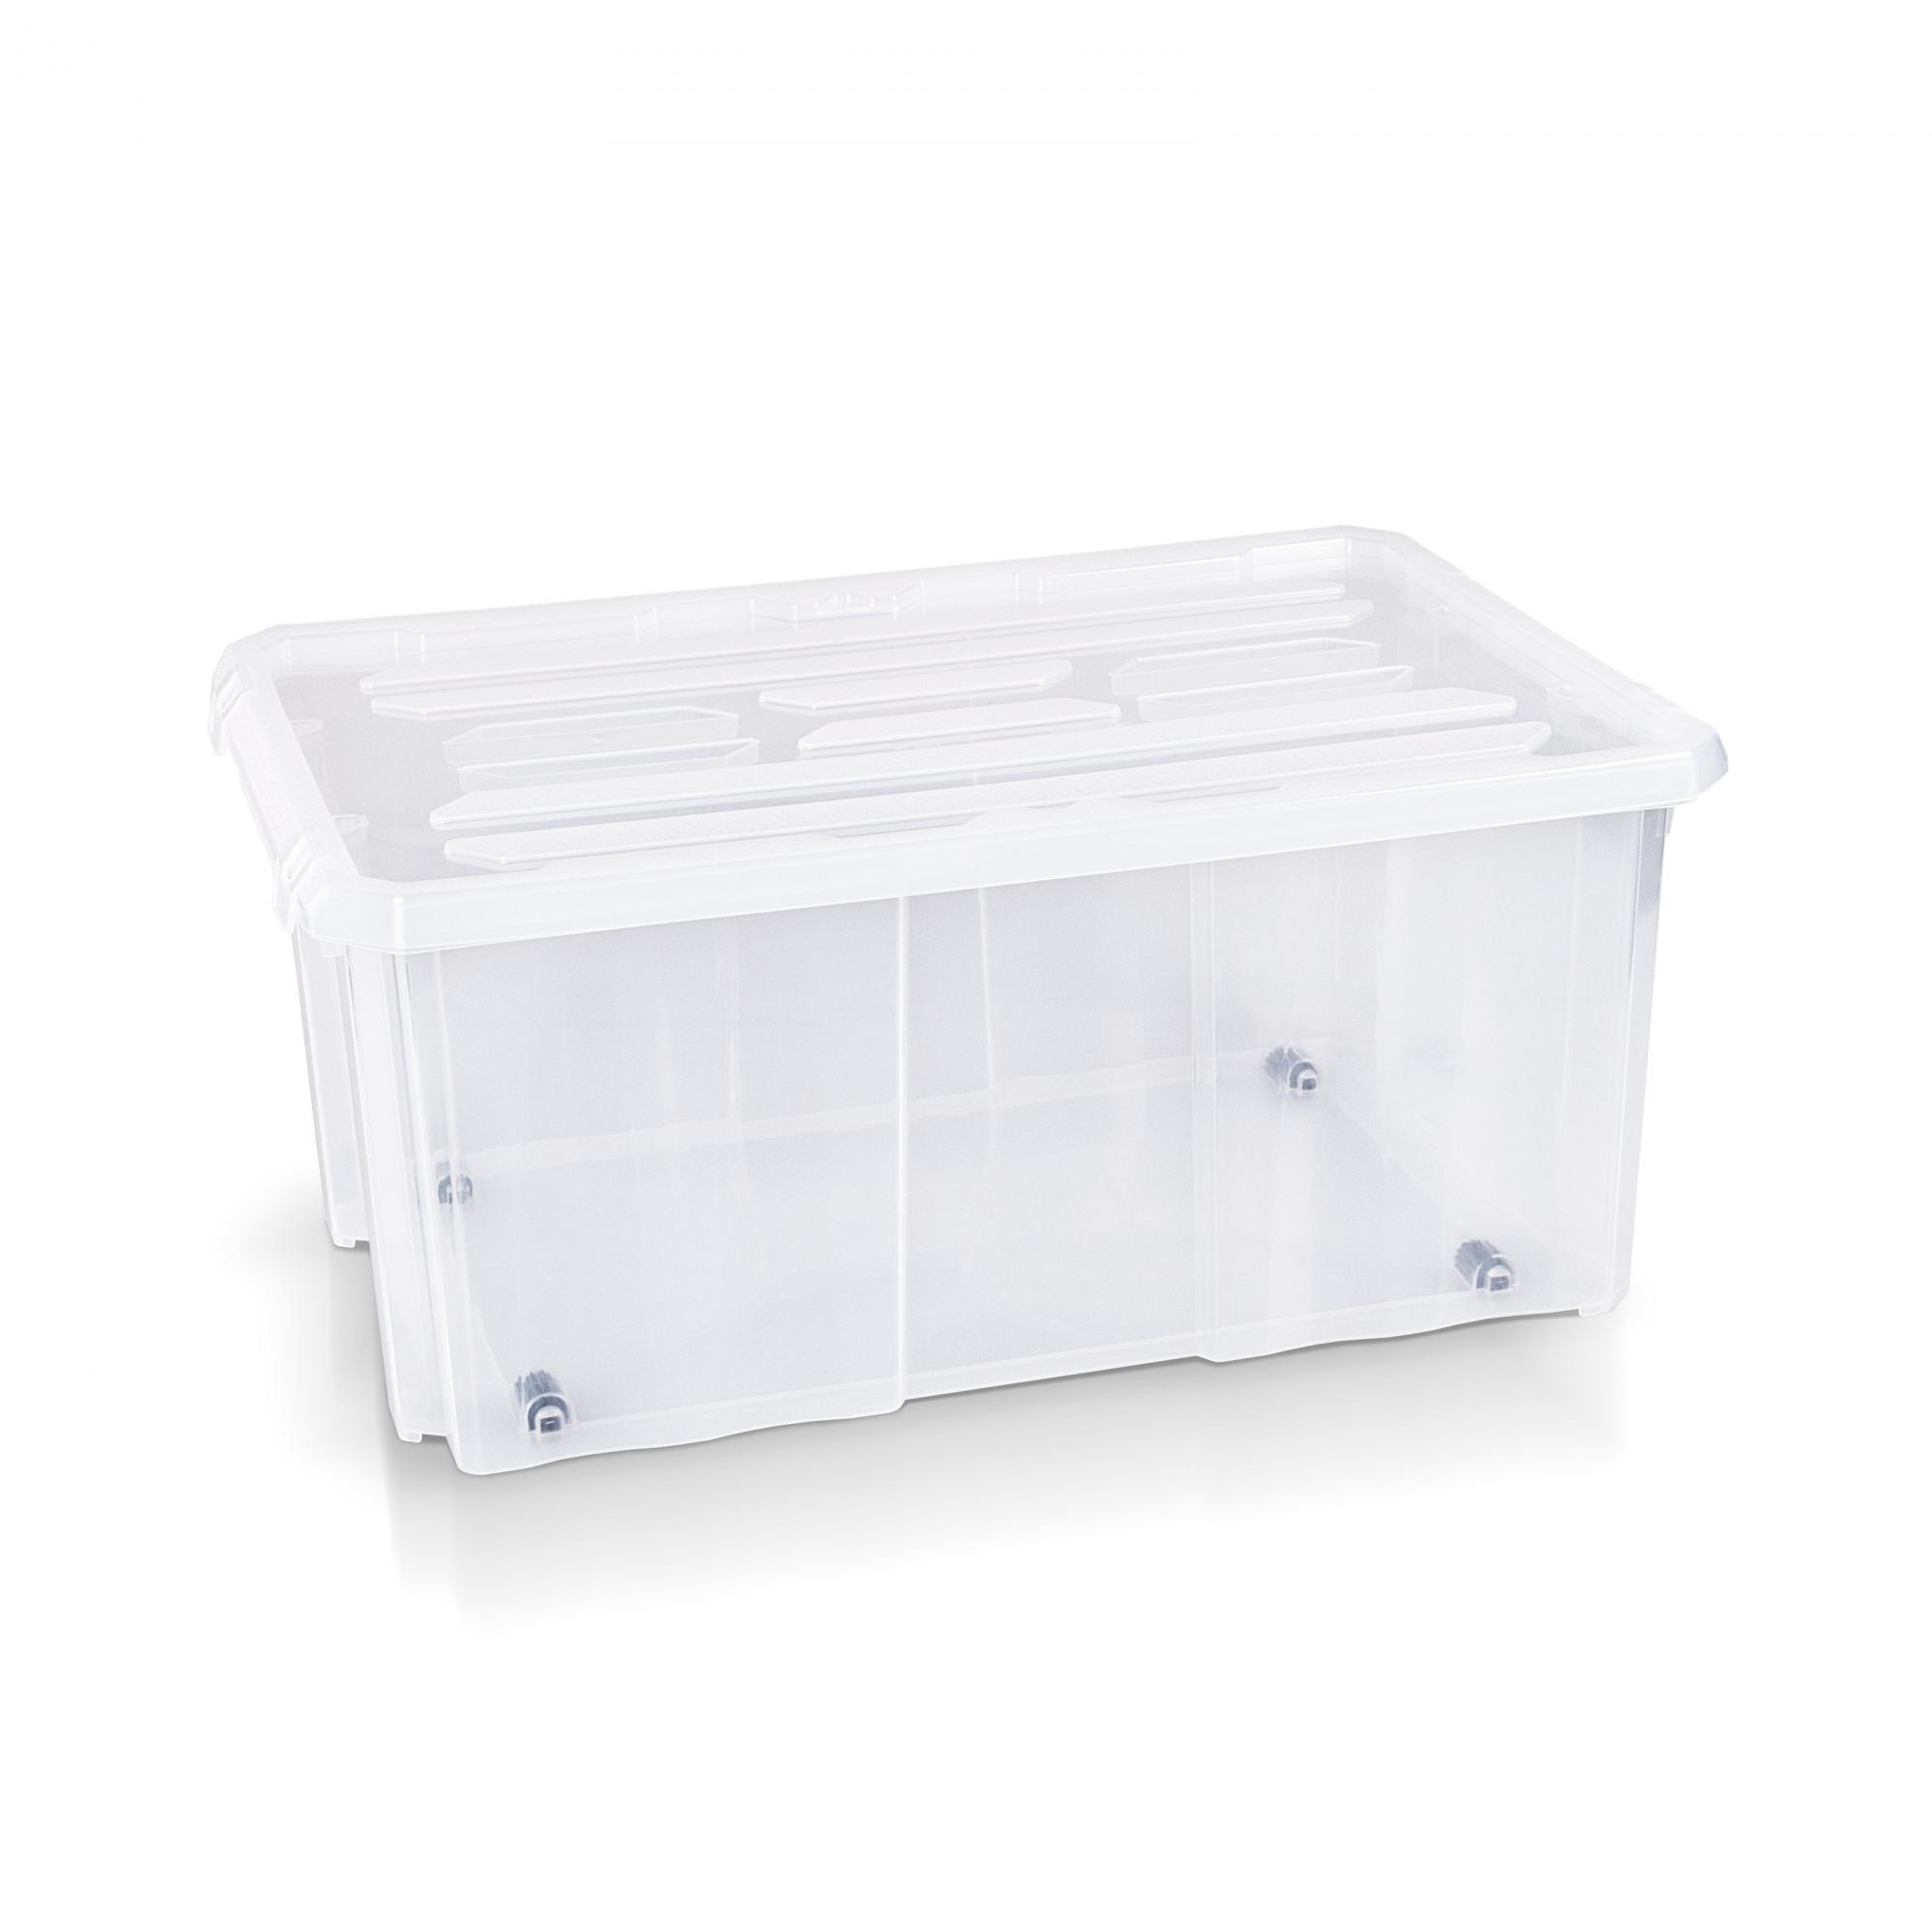 Aufbewahrungsbox + Deckel 60 x 40 x 26.5 cm transparent, Garderobe &  Aufbewahrung, Wohnen, Haushalt & Wohnen